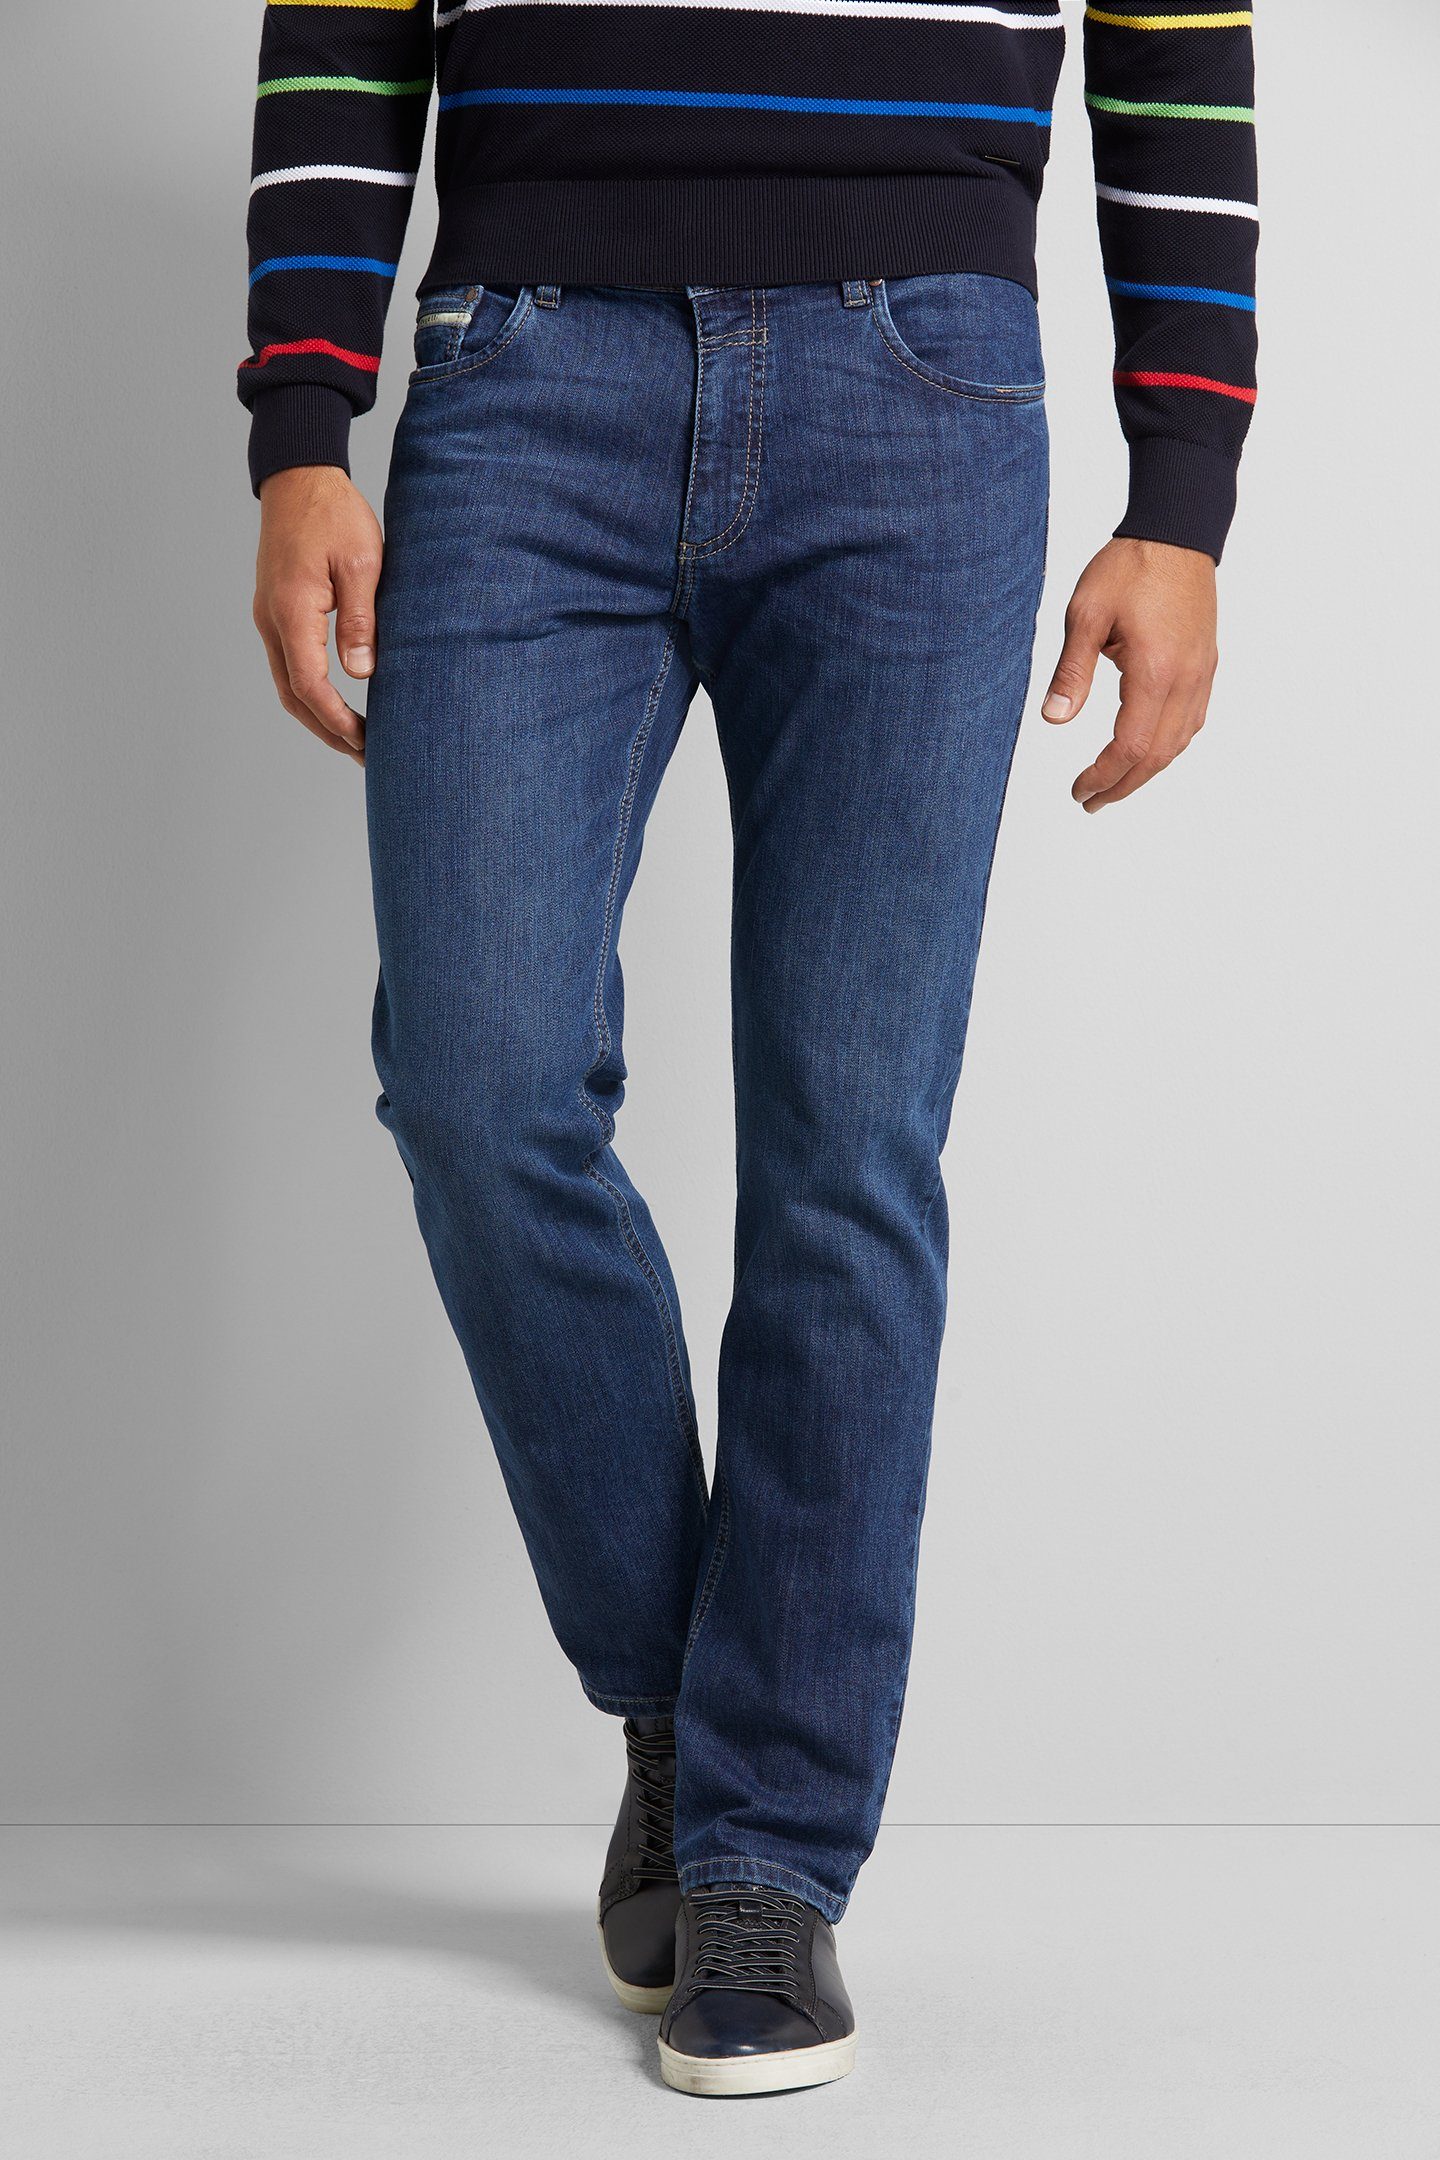 bugatti 5-Pocket-Jeans mit einem leichten Used Look blau